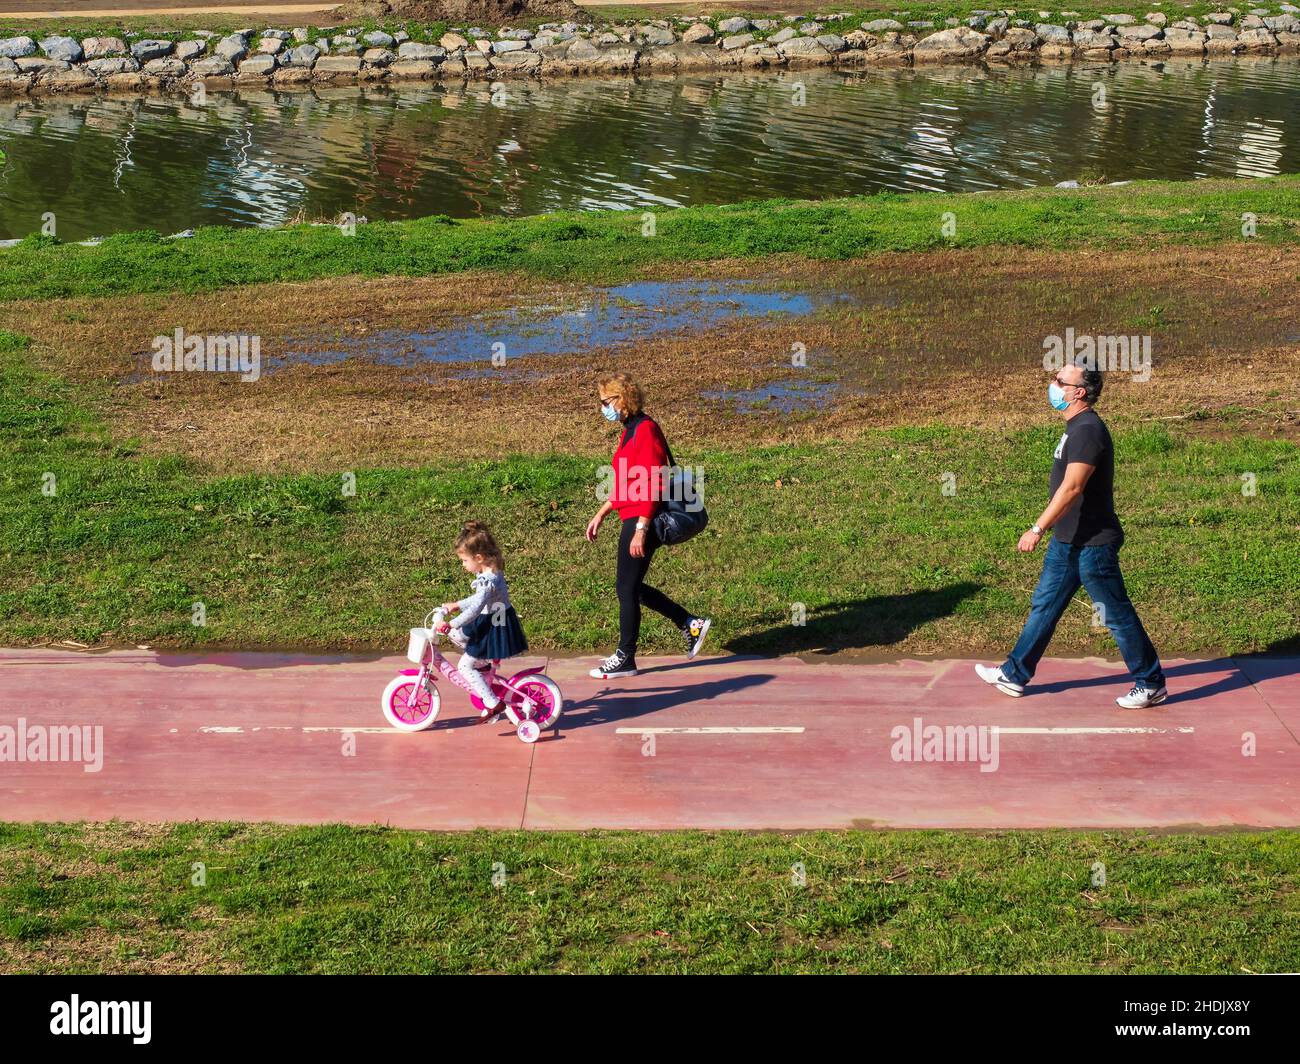 Fuengirola, Málaga, España. 02,06,2021 Un par de abuelos con máscaras faciales recorren la bicicleta de su nieta a través de un parque en un día soleado Foto de stock